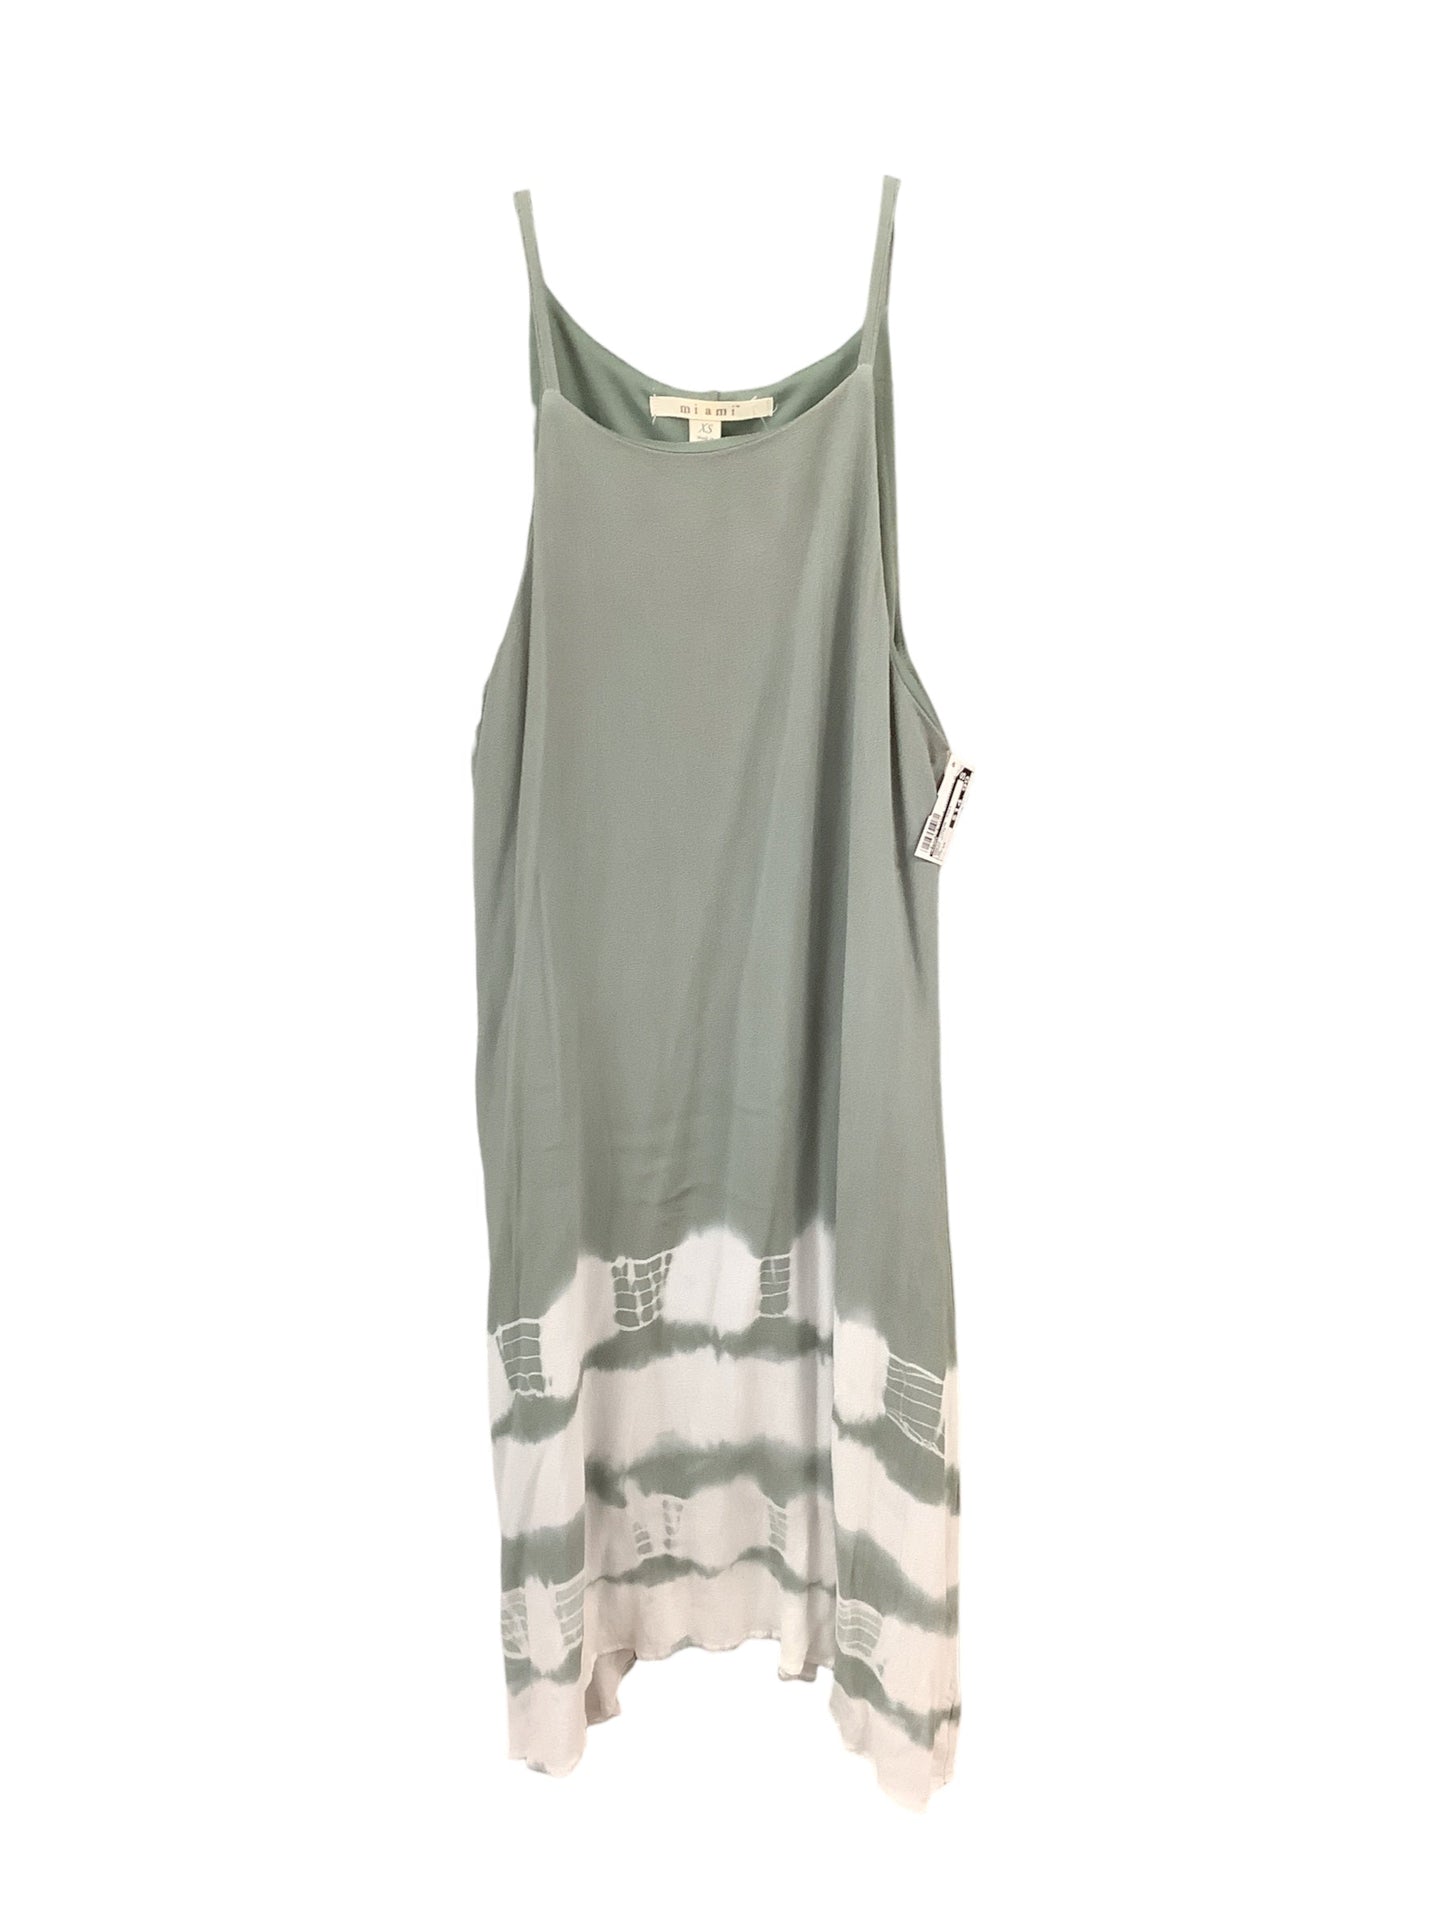 Dress Casual Midi By Miami  Size: Xs